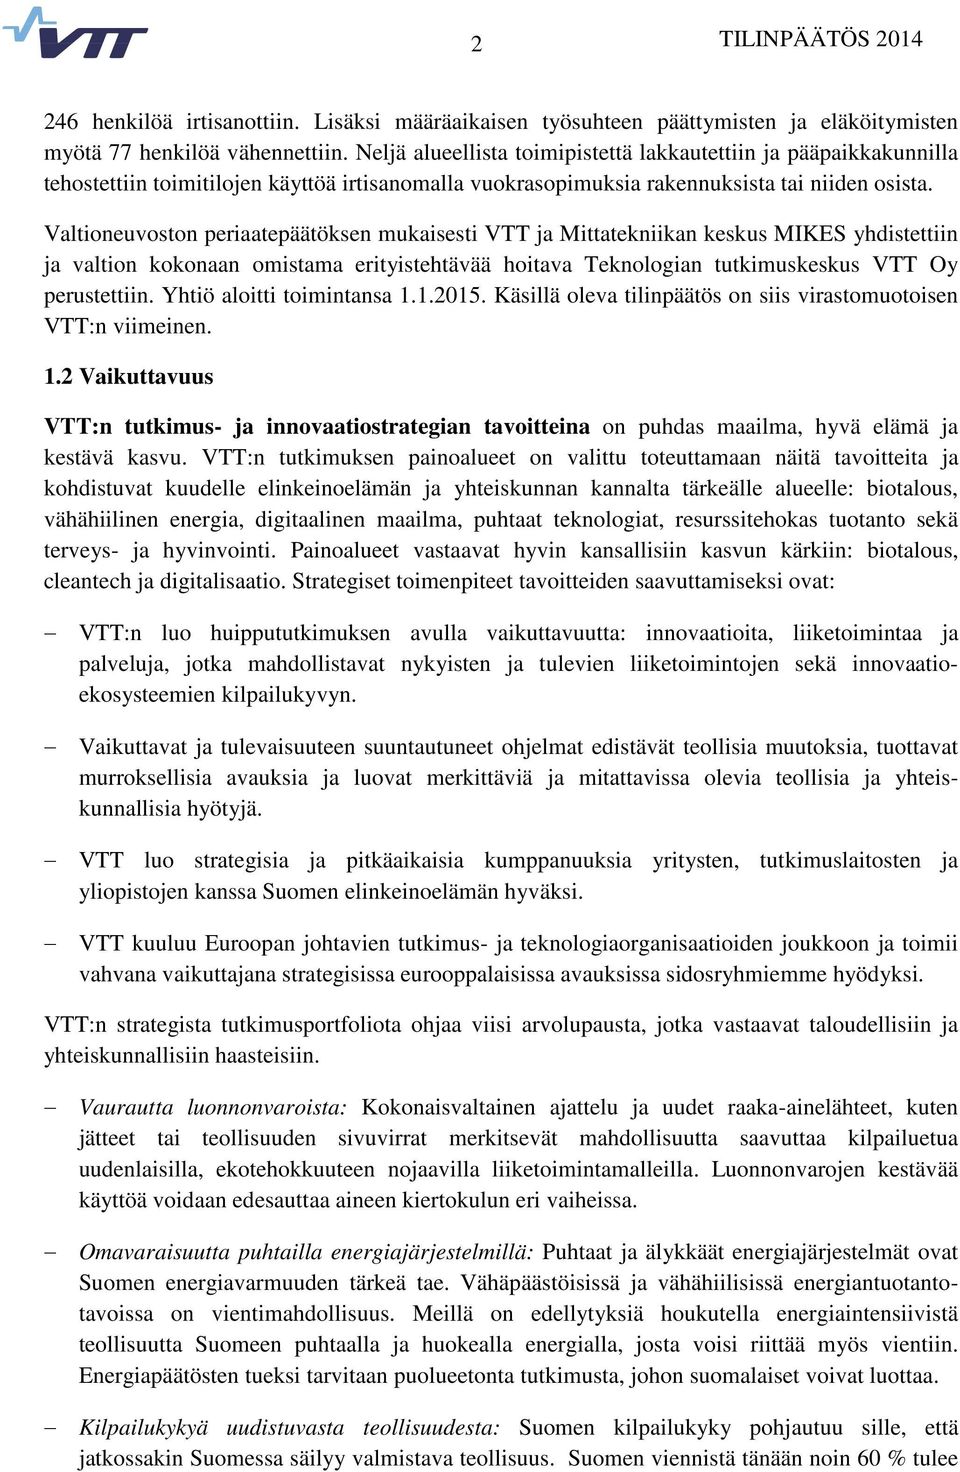 Valtioneuvoston periaatepäätöksen mukaisesti VTT ja Mittatekniikan keskus MIKES yhdistettiin ja valtion kokonaan omistama erityistehtävää hoitava Teknologian tutkimuskeskus VTT Oy perustettiin.